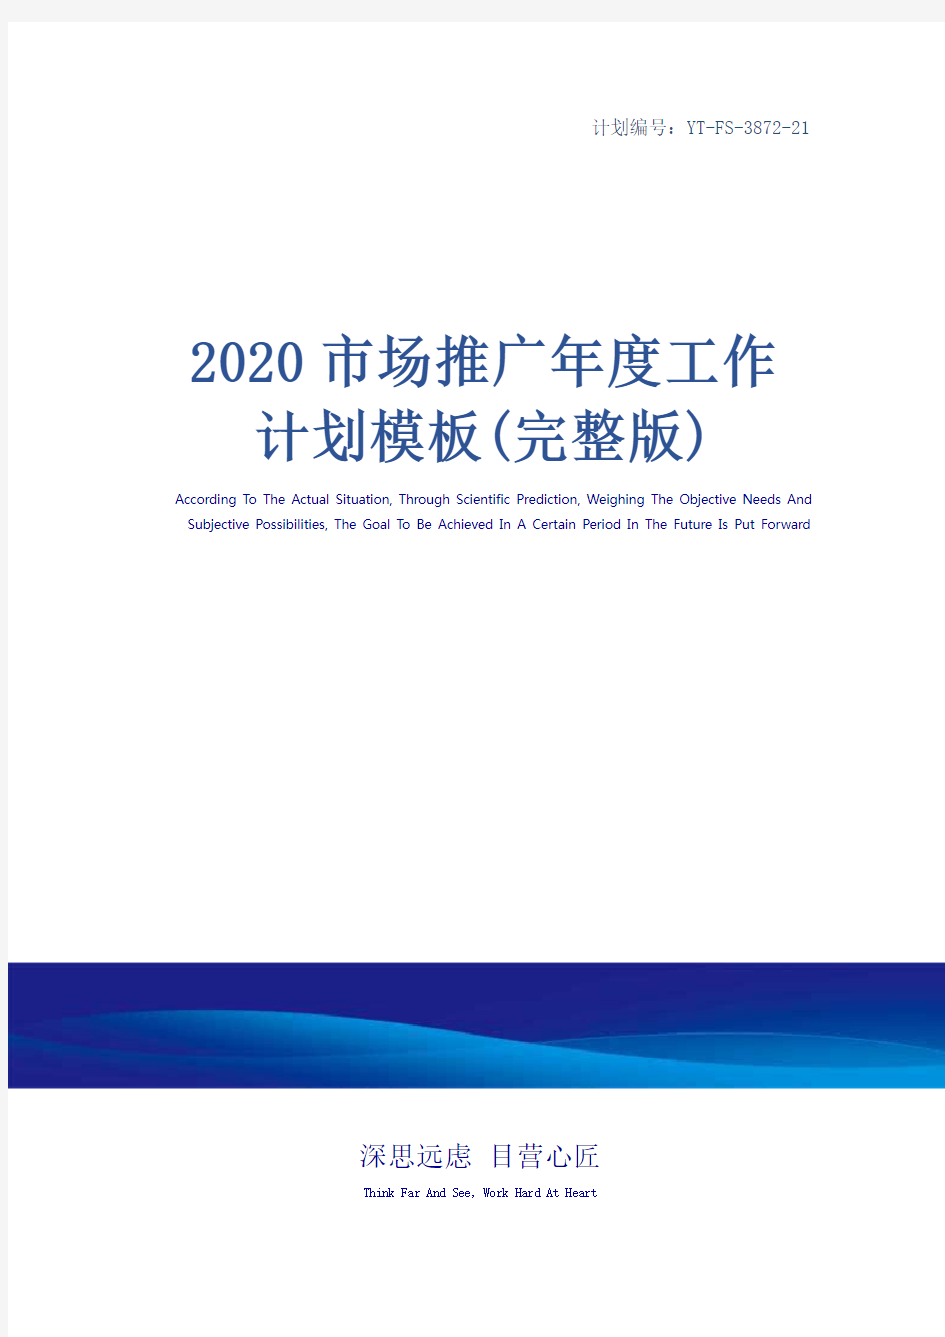 2020市场推广年度工作计划模板(完整版)